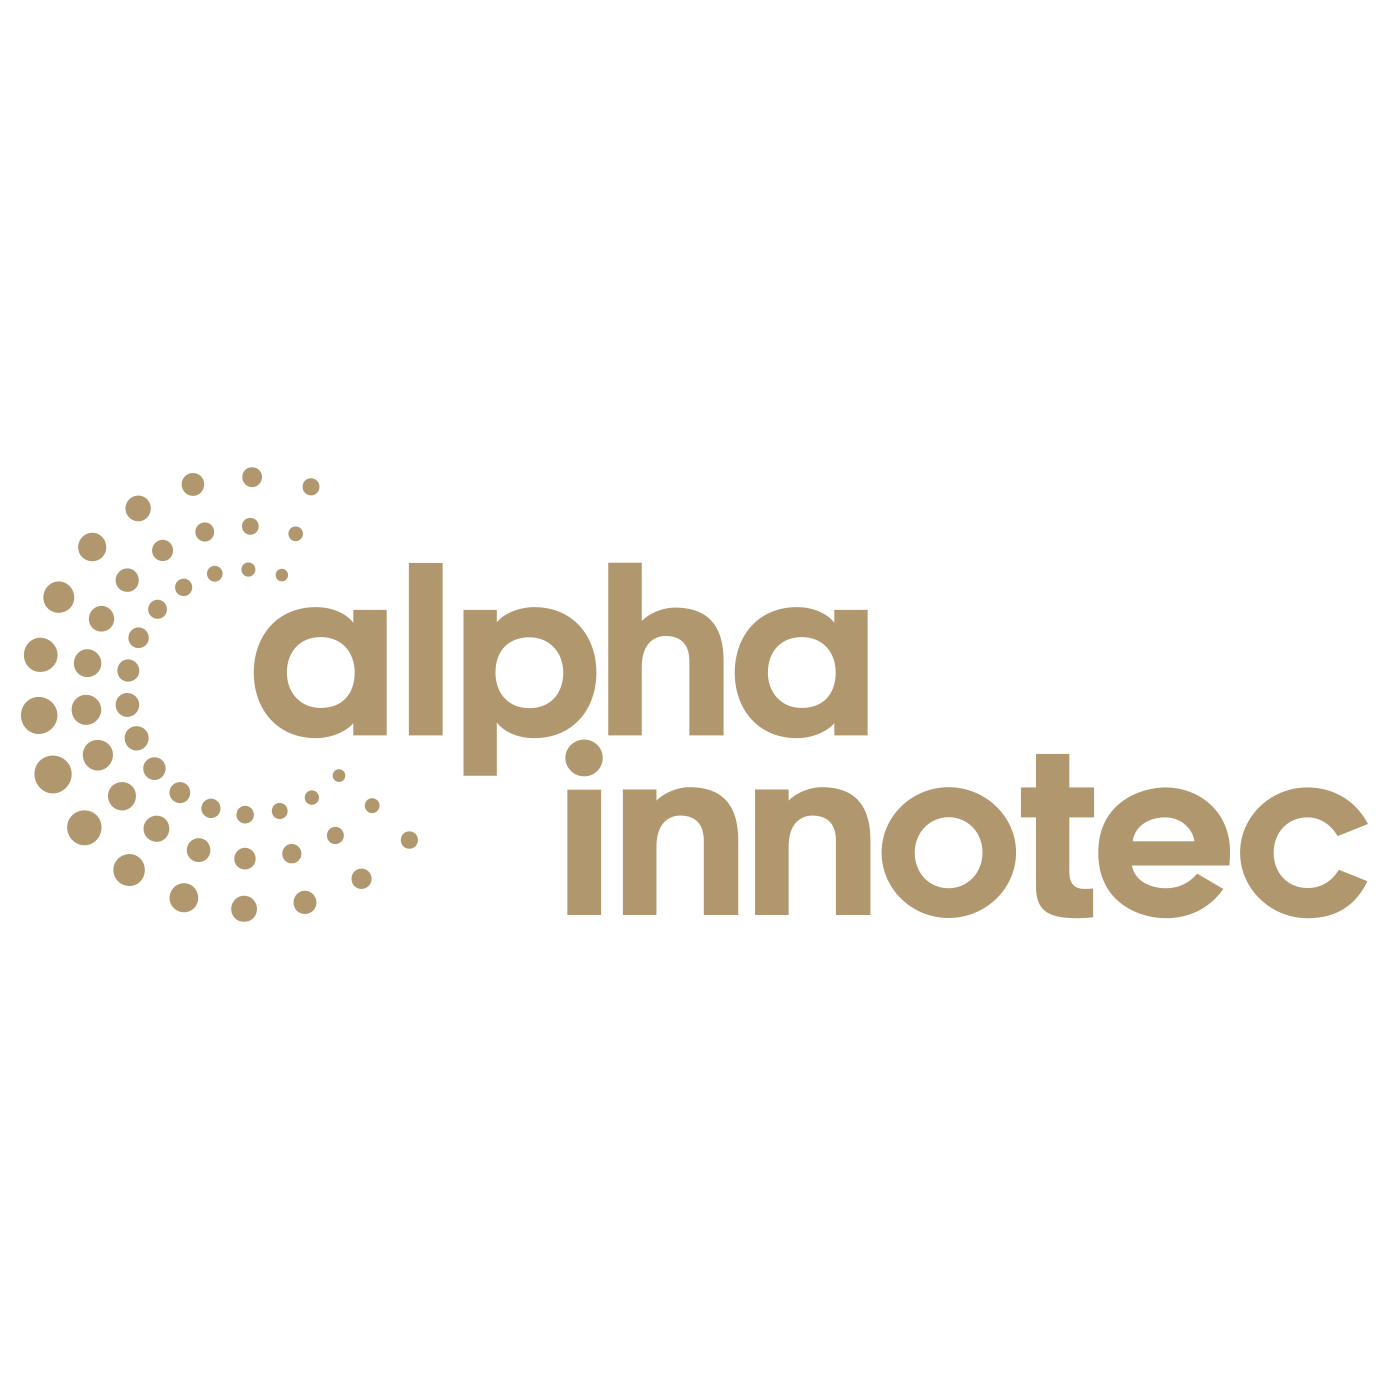 Alpha Innotec